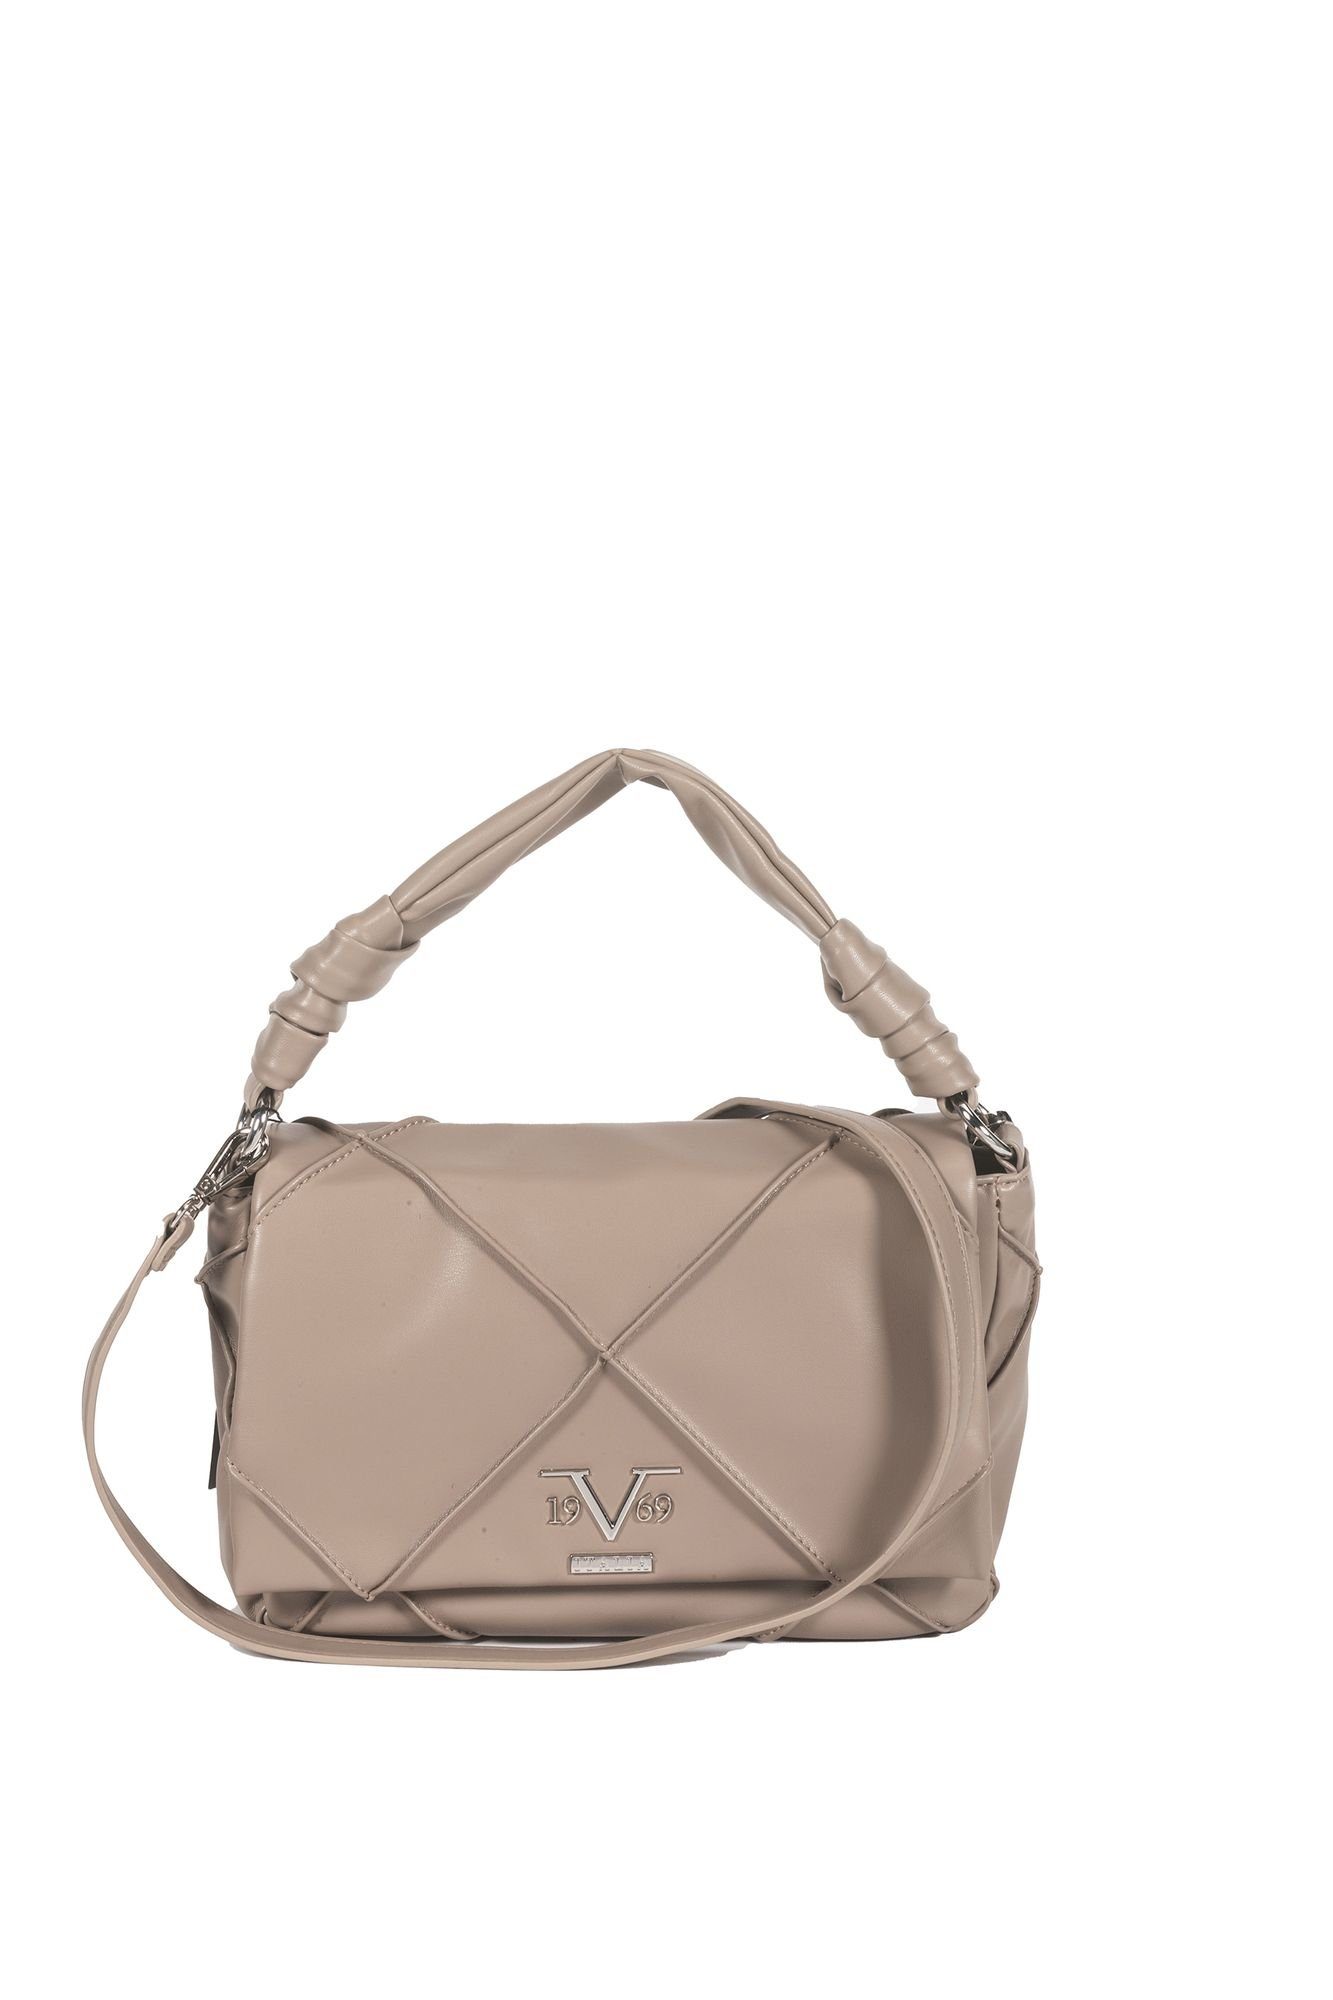 Damen Handtaschen 19V69 Italia by Versace Handtasche Elisa